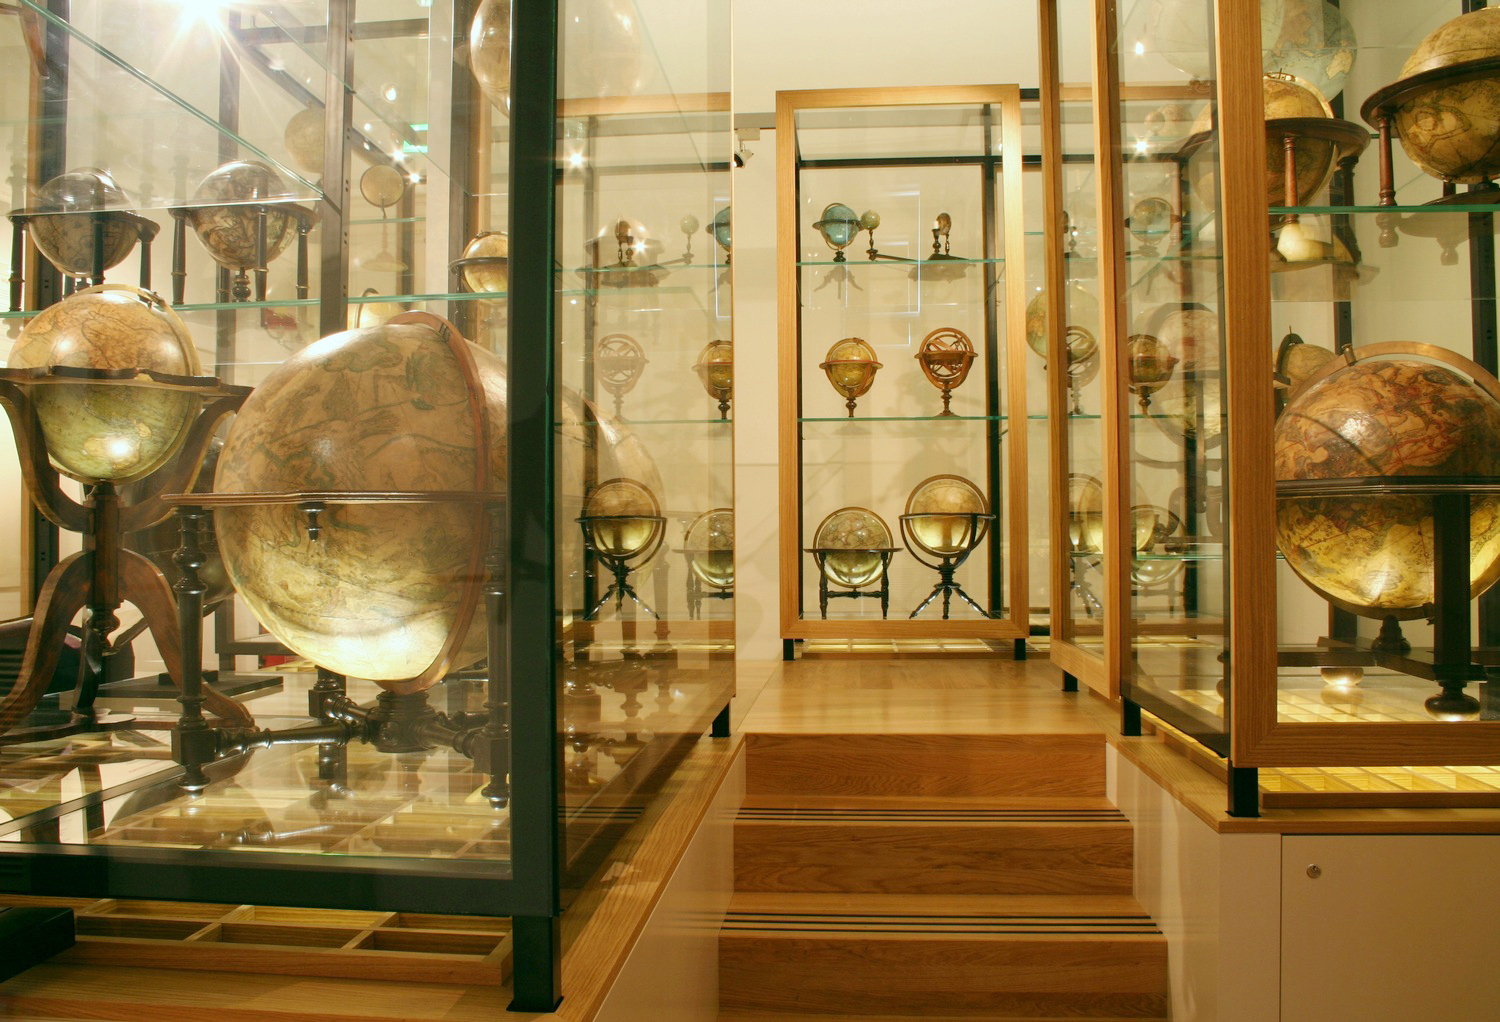 Imagini pentru globenmuseum wien